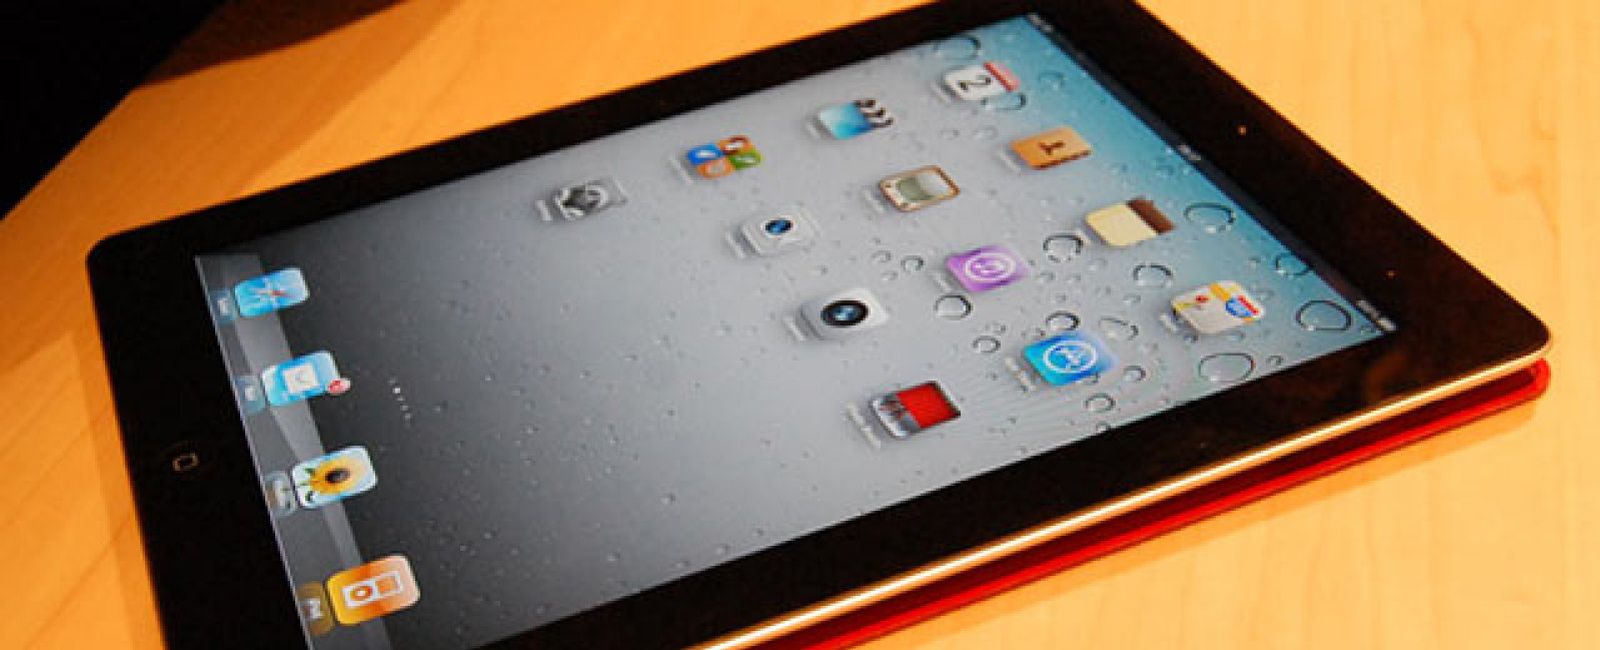 Foto: Cupertino renueva toda su familia de iPad con el procesador A6X